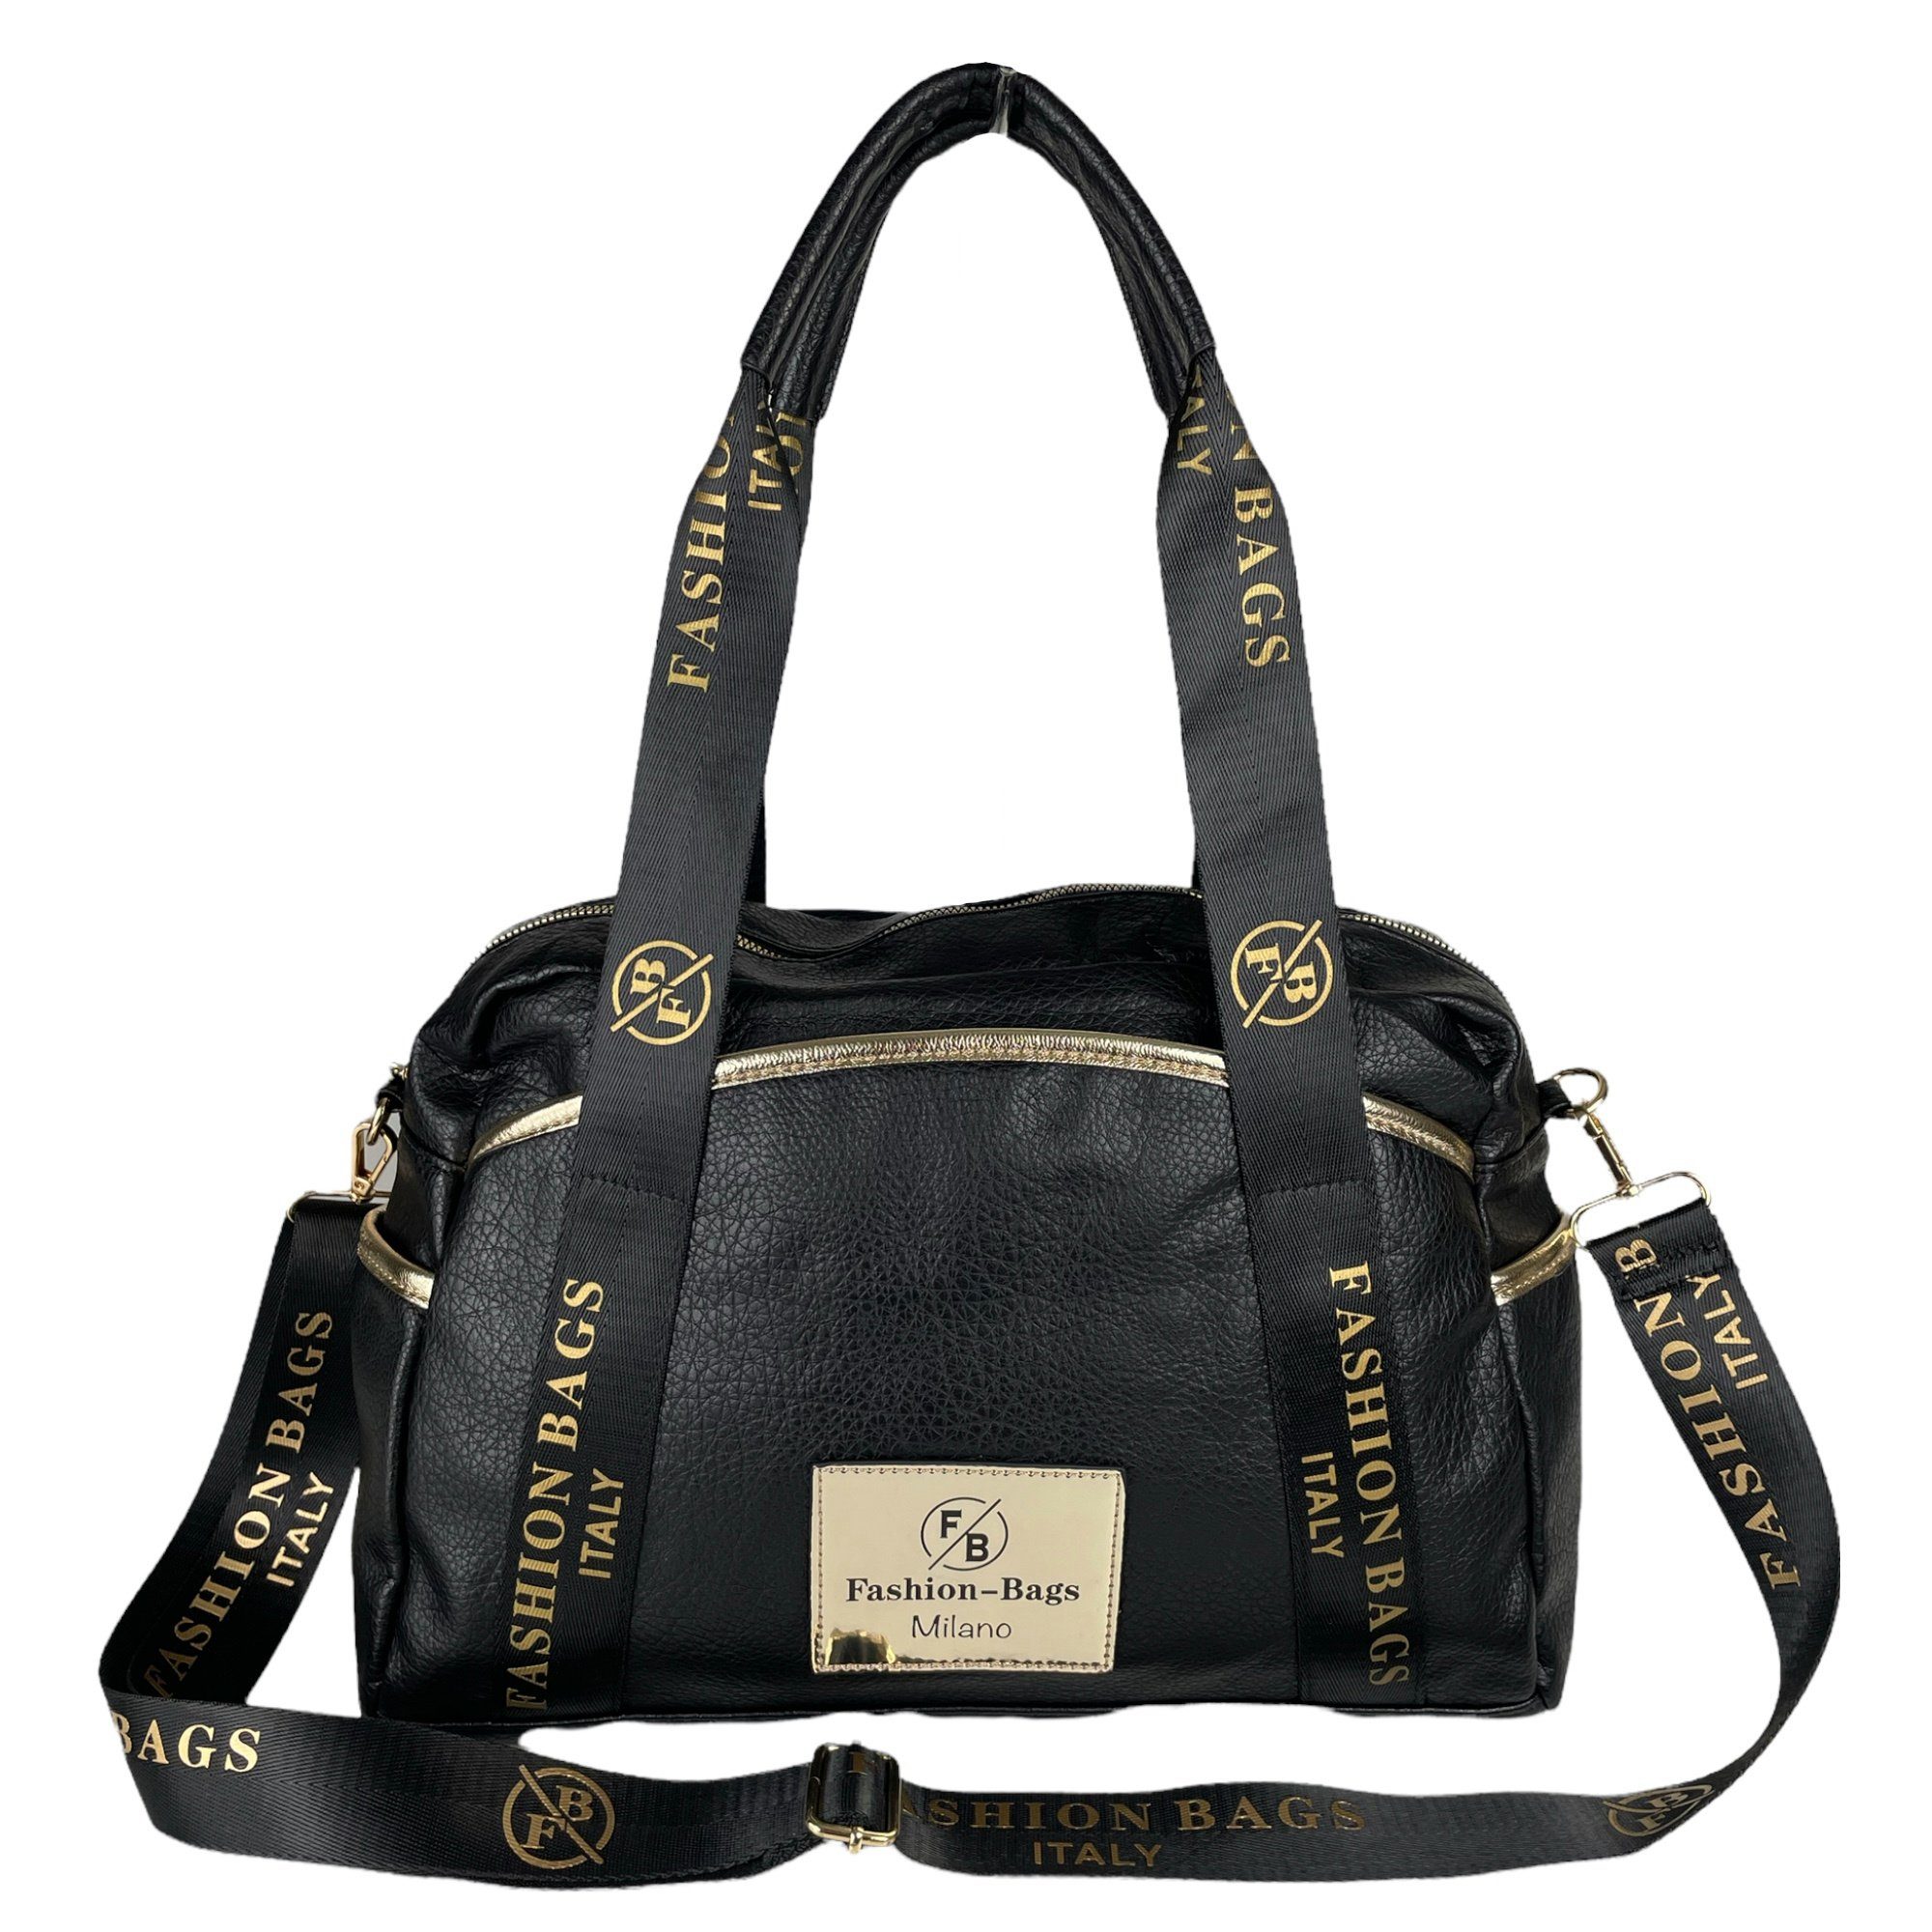 T67629, Farbe Schulterriemen / Schultertasche // abnembarer schwarz Tragehenkel, Taschen4life lange Handtasche gold moderne Damen